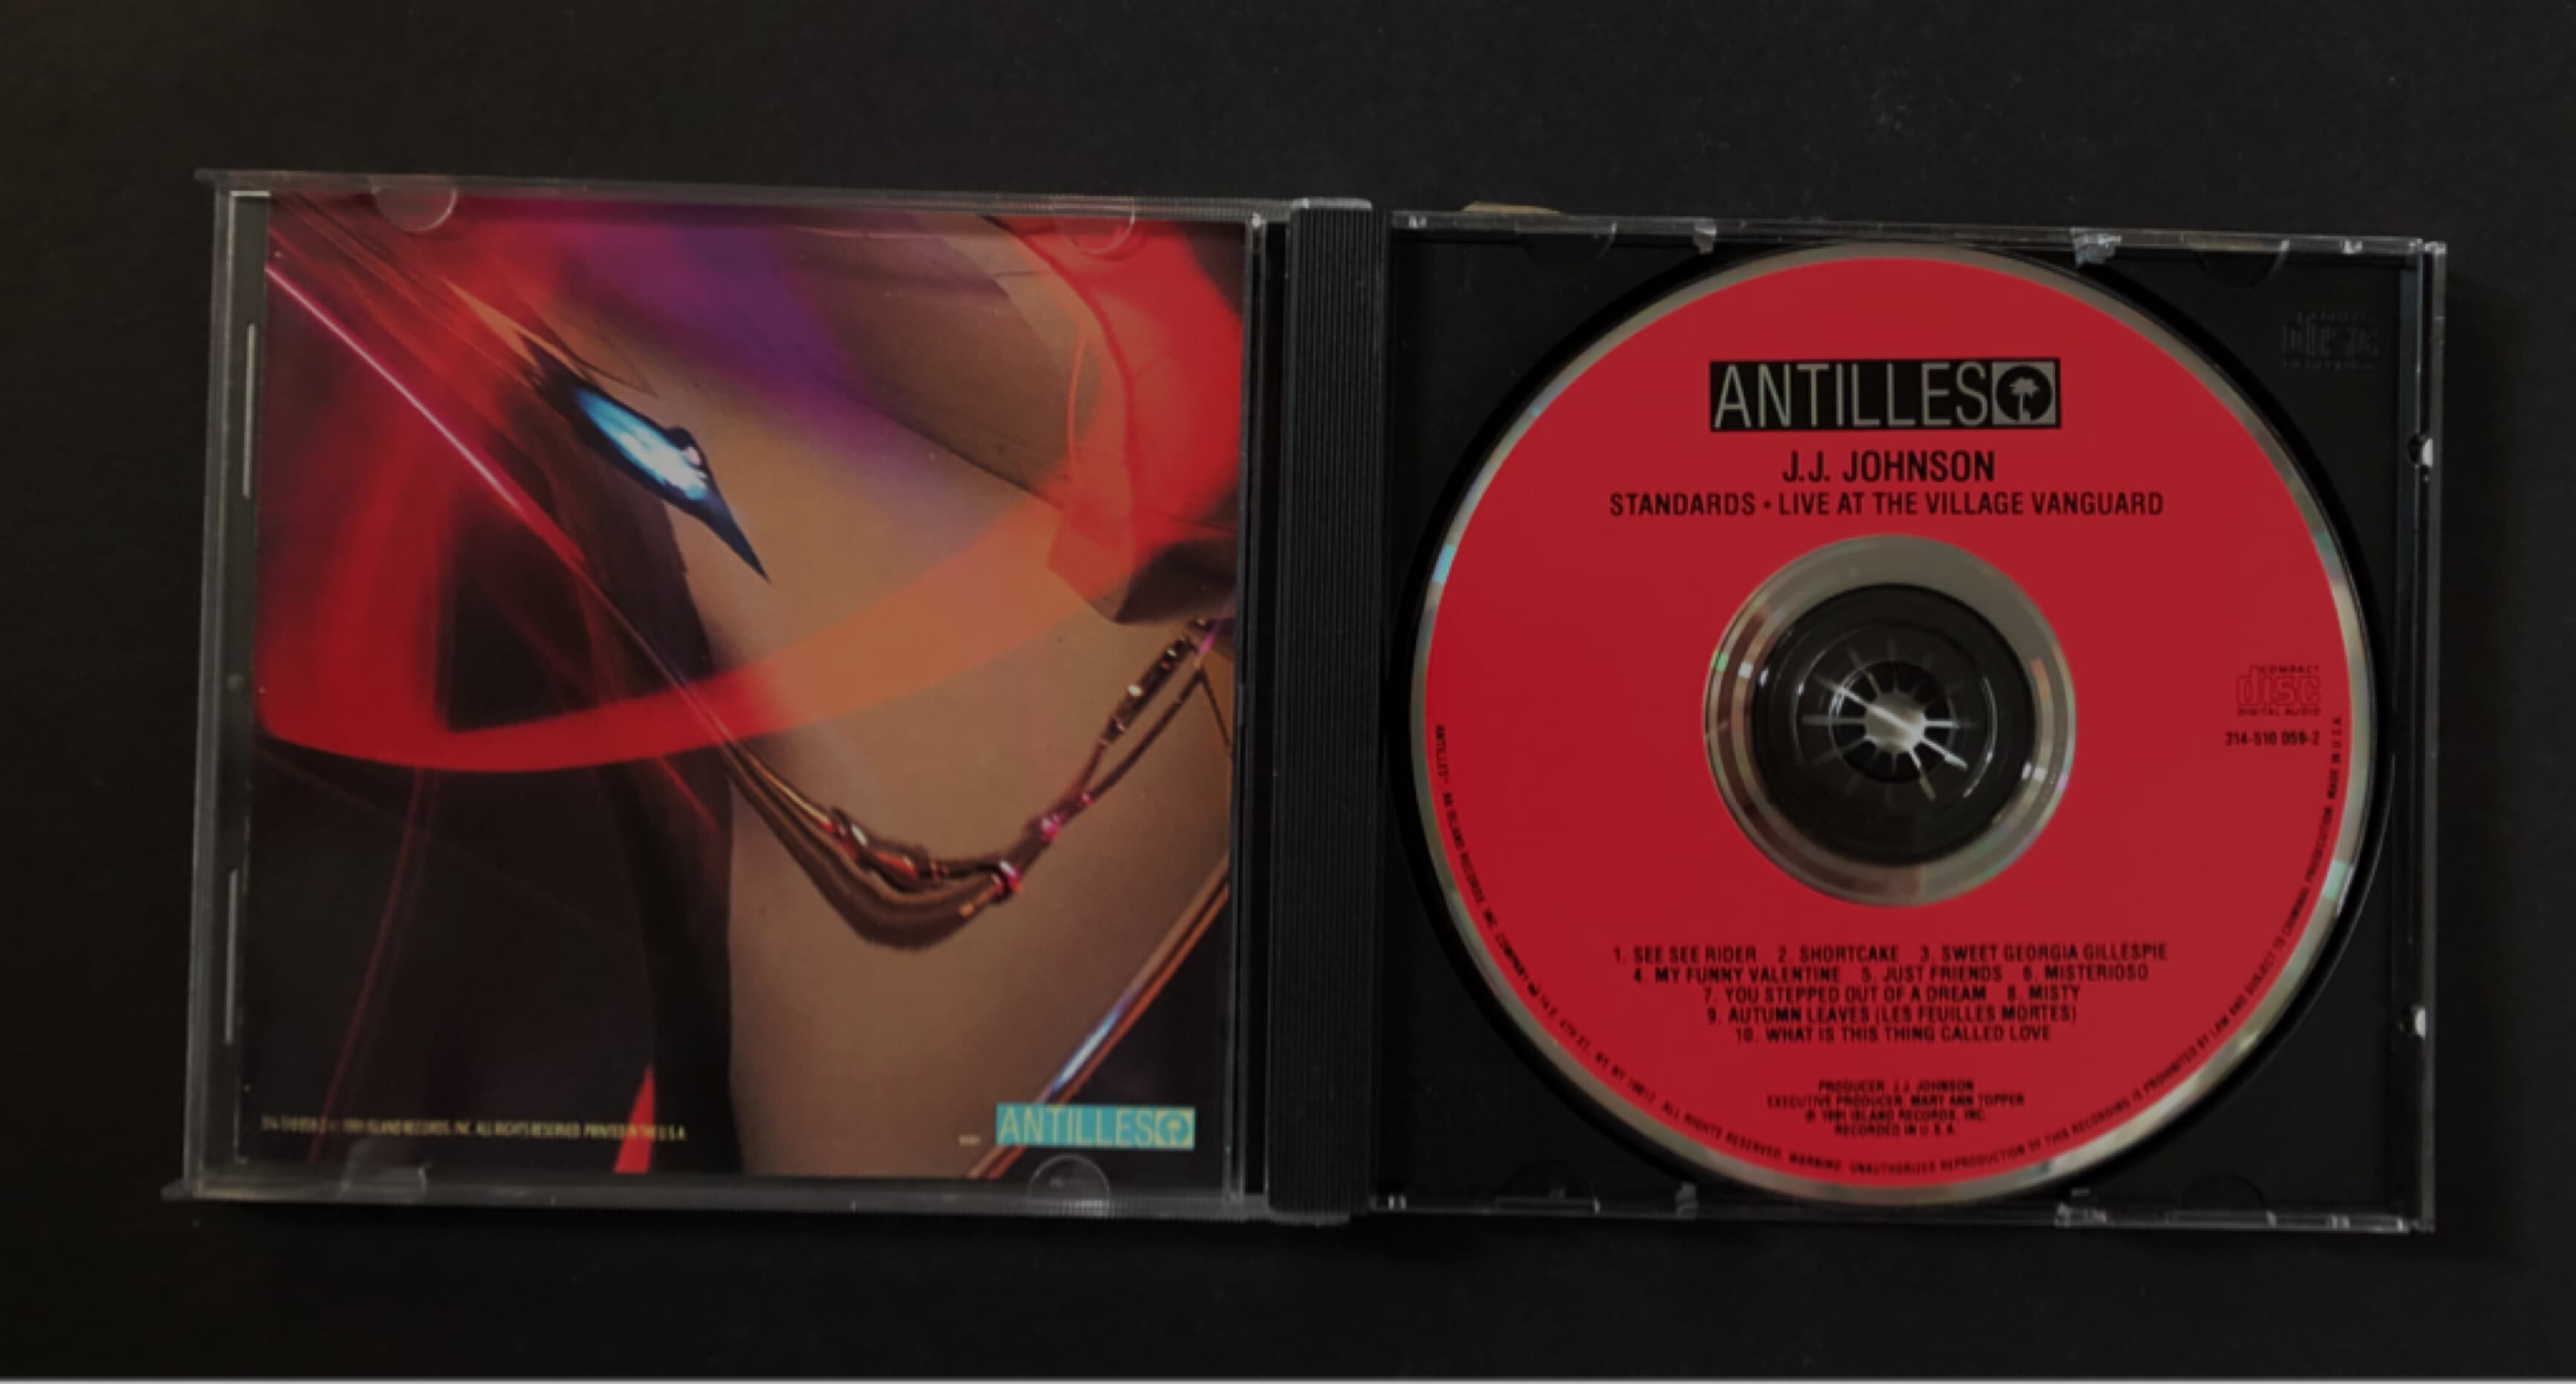 [CD] 수입반 JJ JOHNSON - STANDARDS (US발매)